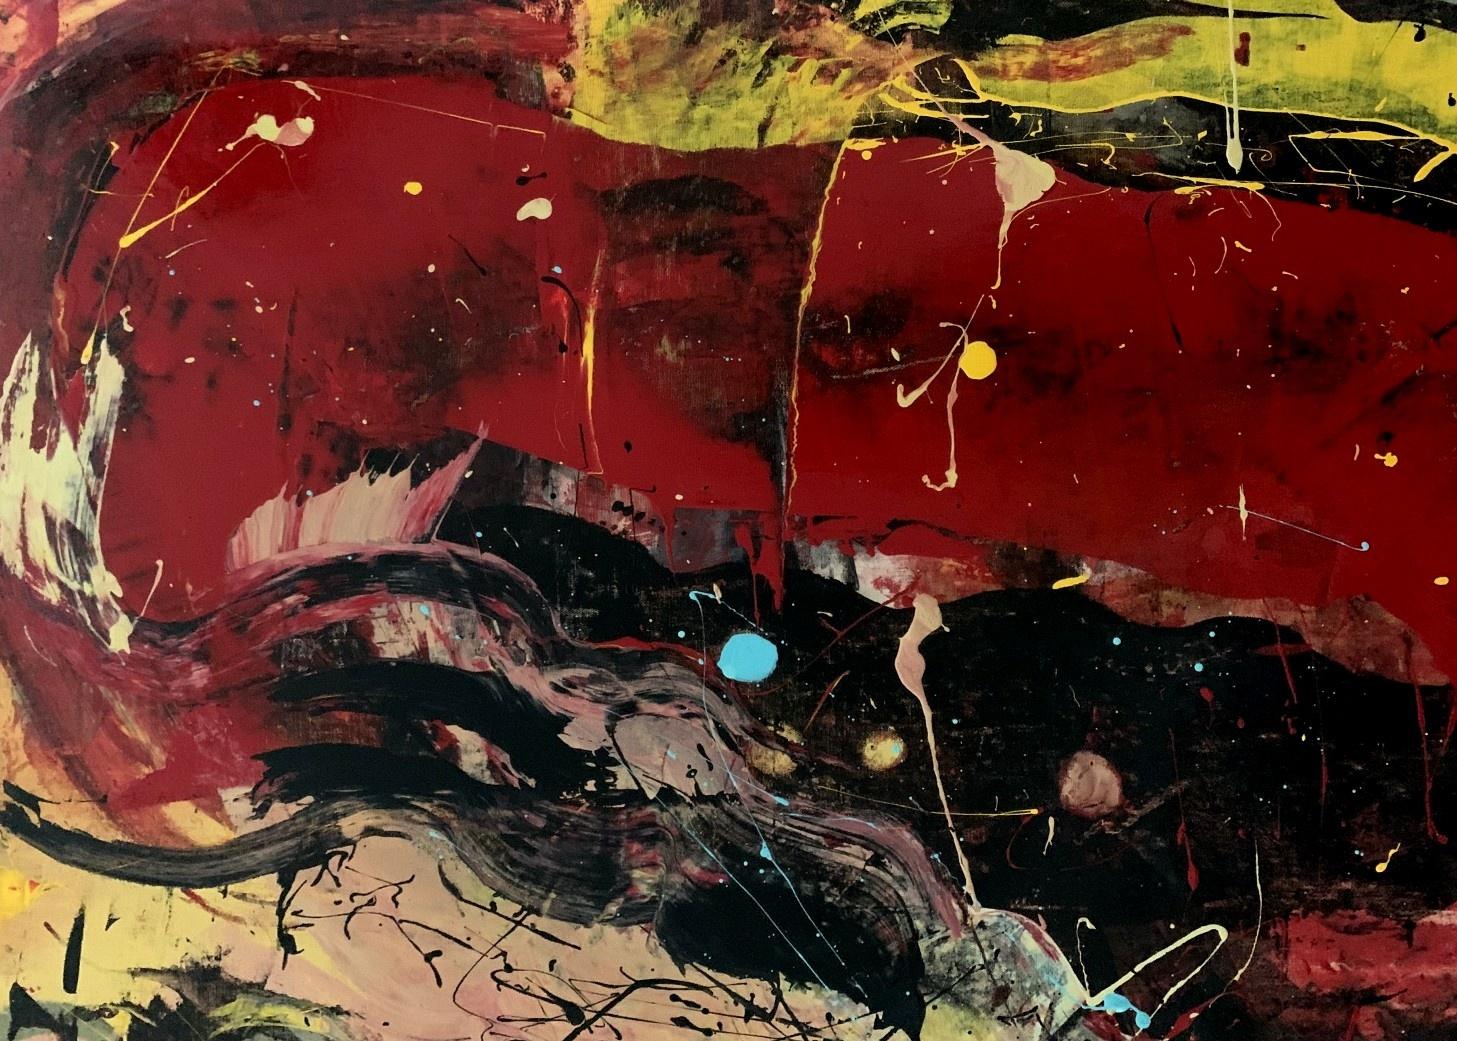 Abstraction - Peinture à l'huile abstraite contemporaine, colorée, dynamique - Contemporain Painting par Monika Rossa